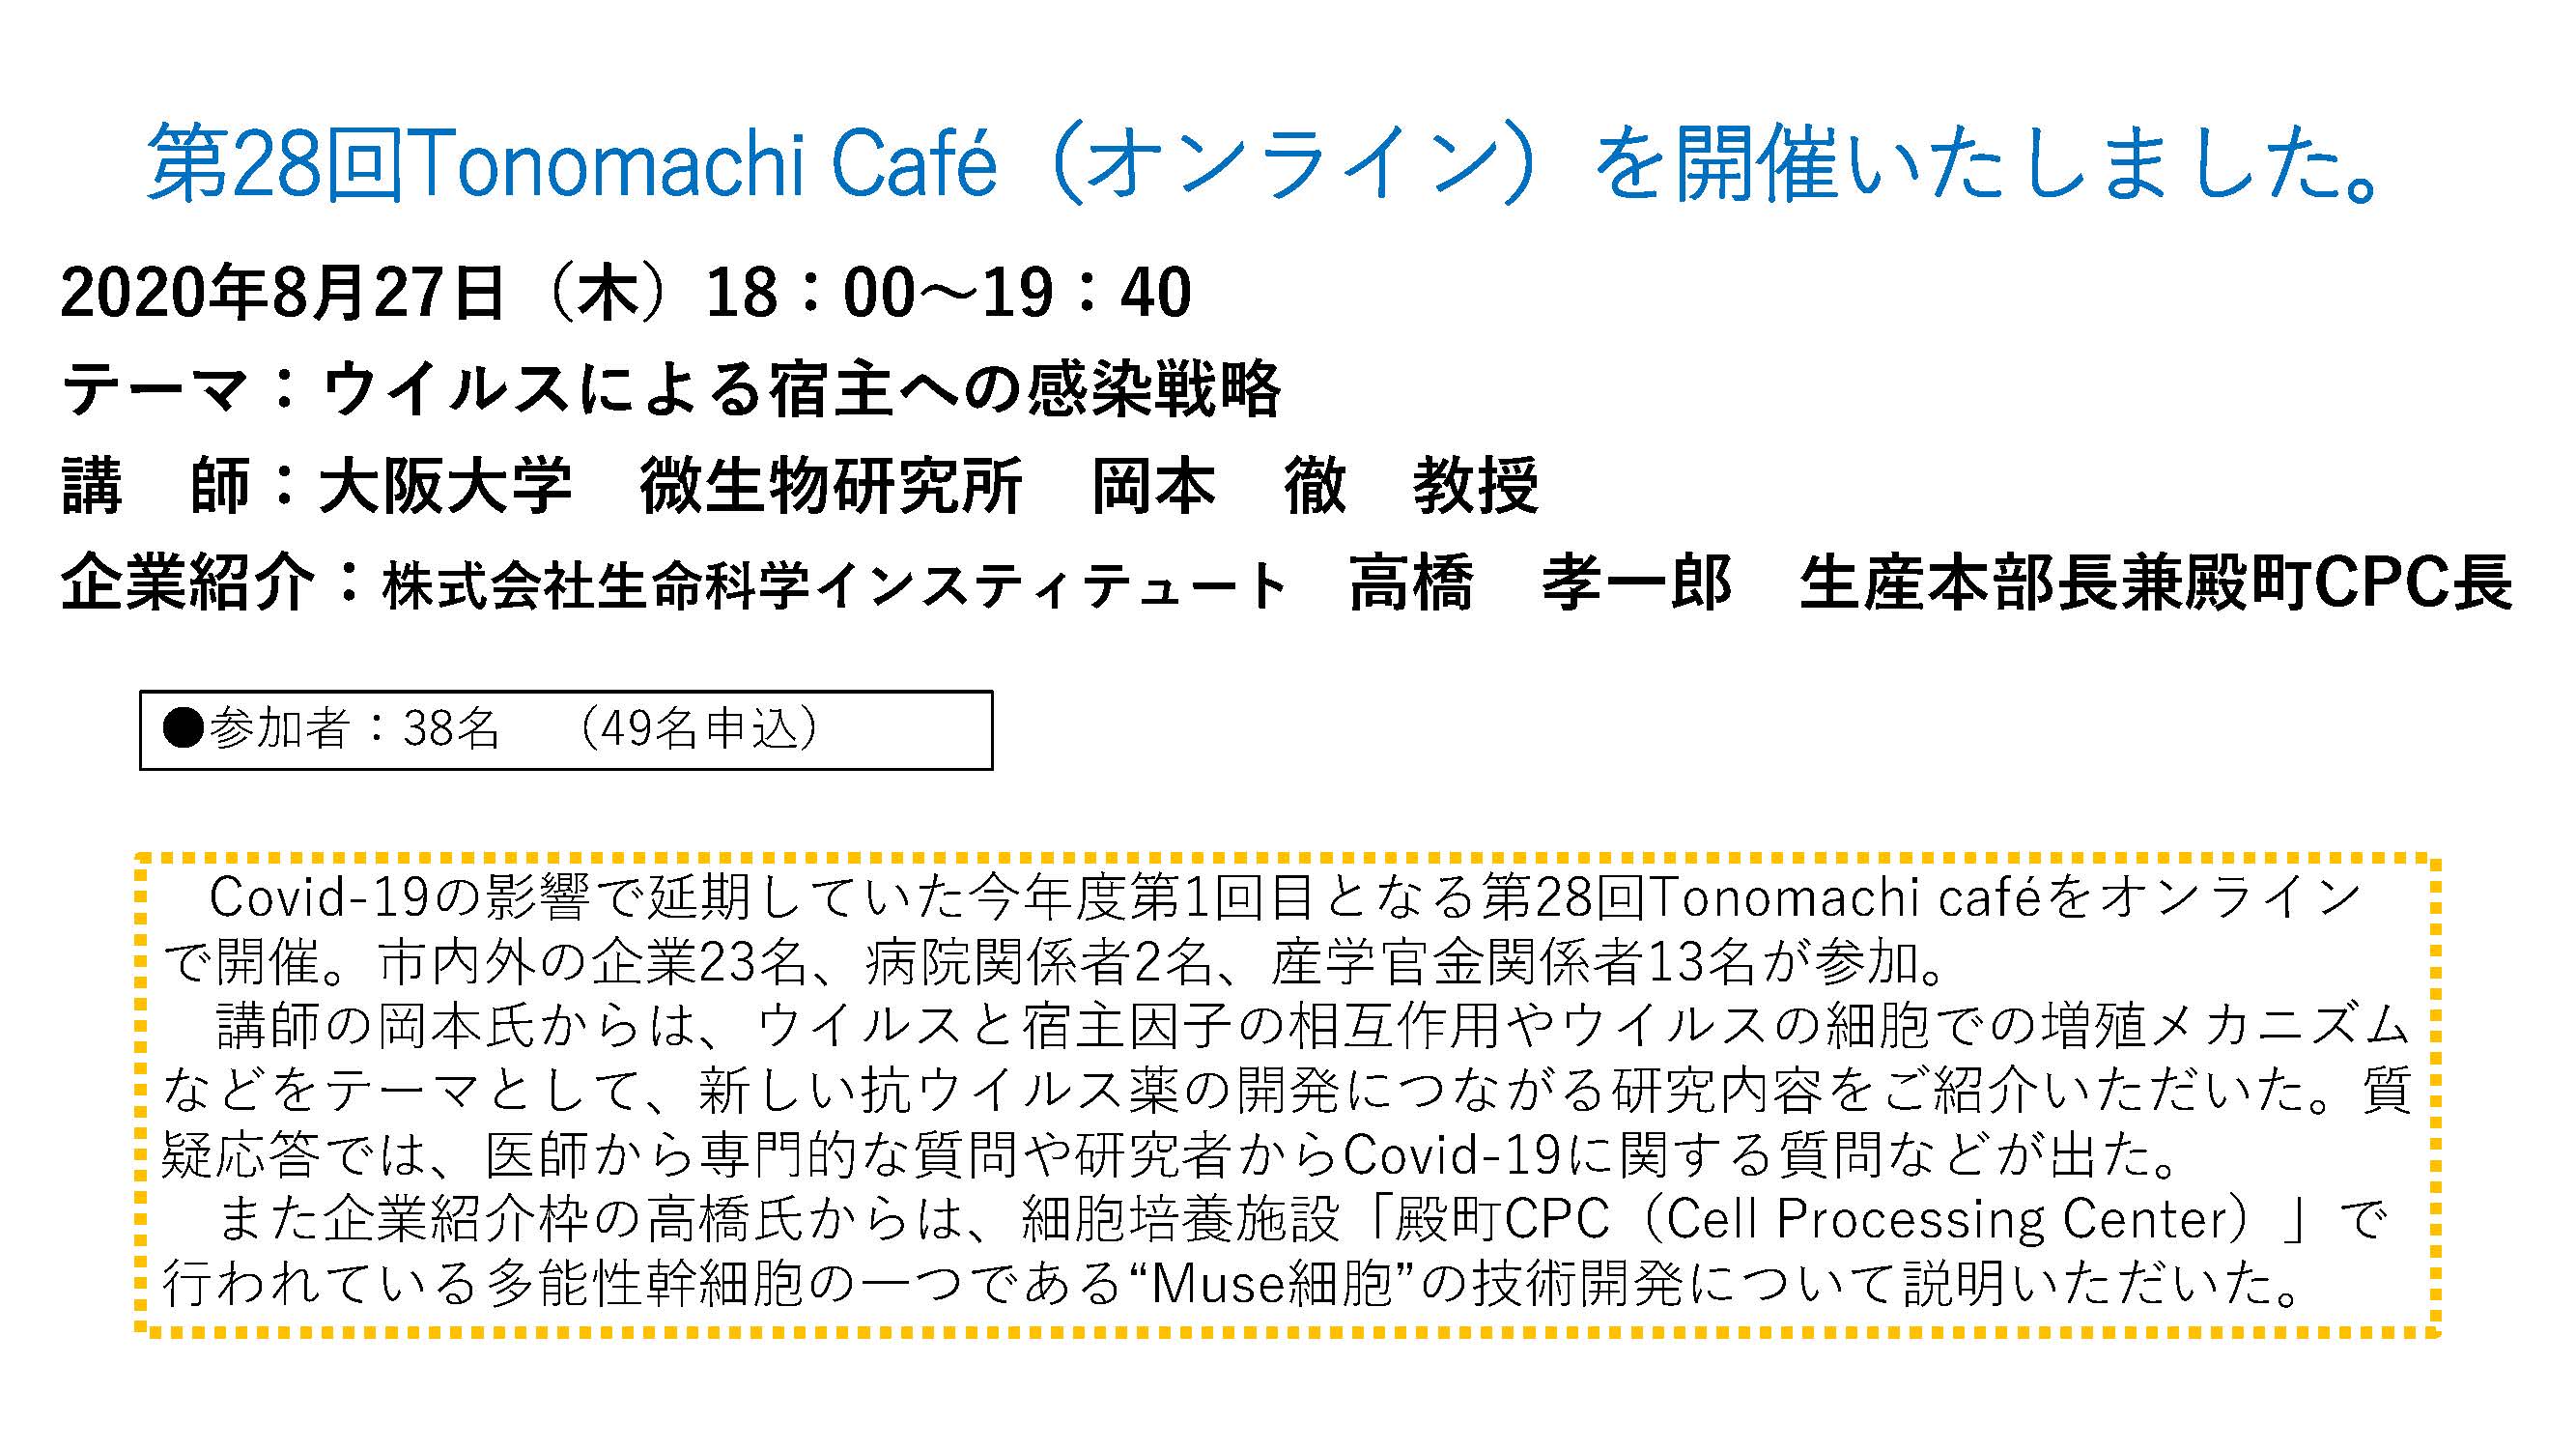 The 28th Tonomachi café online version image